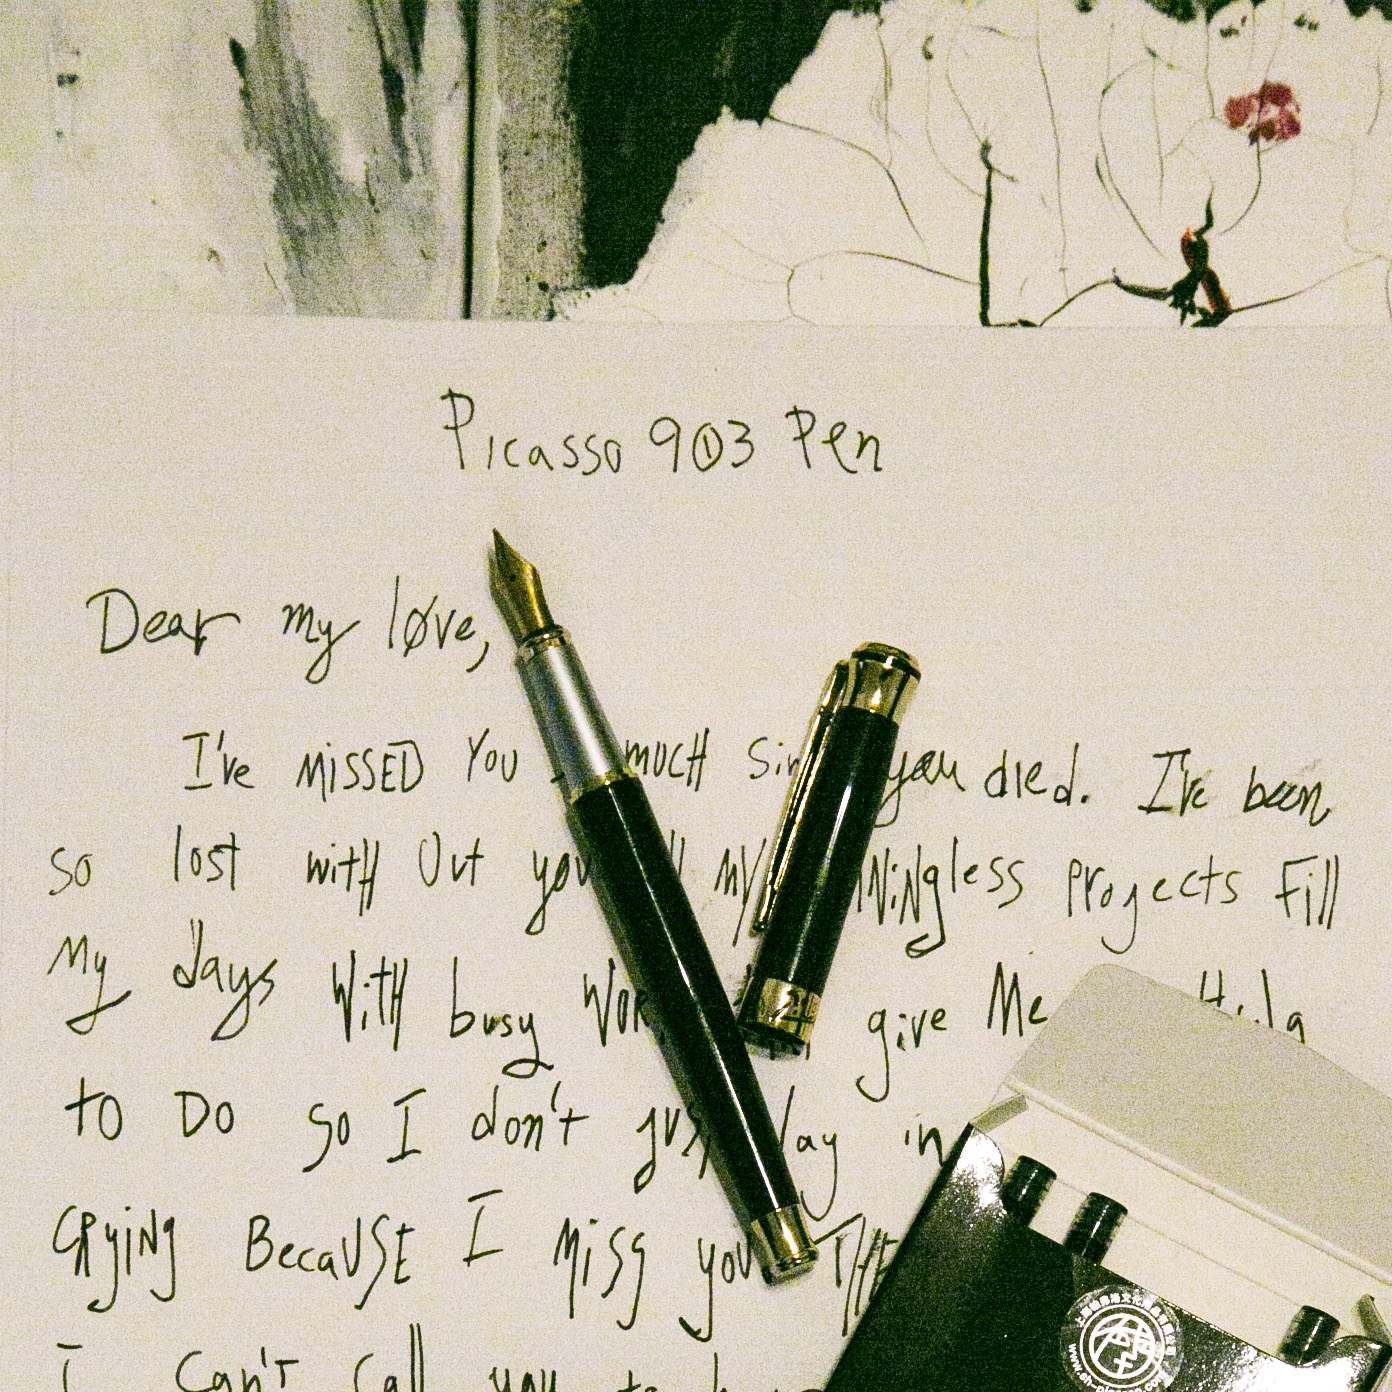 Pen Review – Picasso 903 Pen